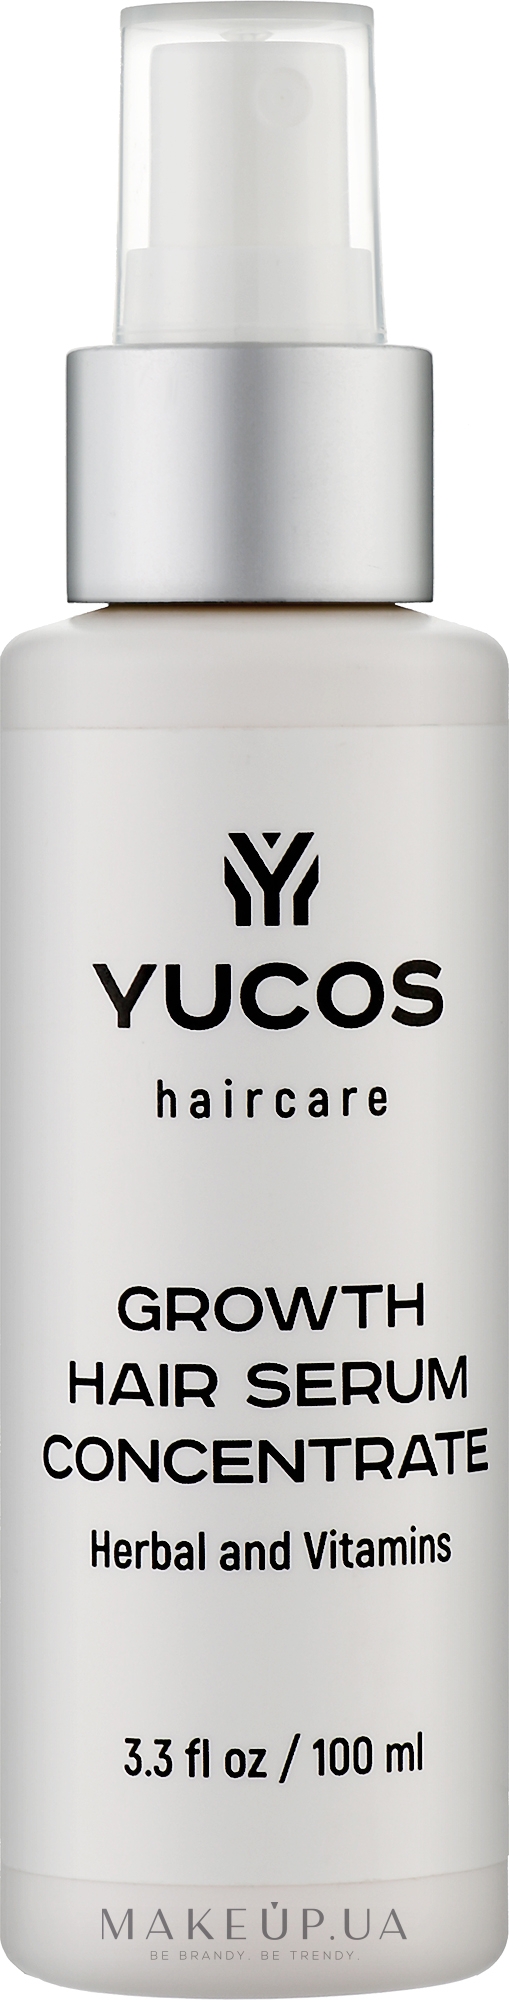 Концентрат сыворотки для роста волос - Yucos Growth Hair Serum Concentrate — фото 100ml